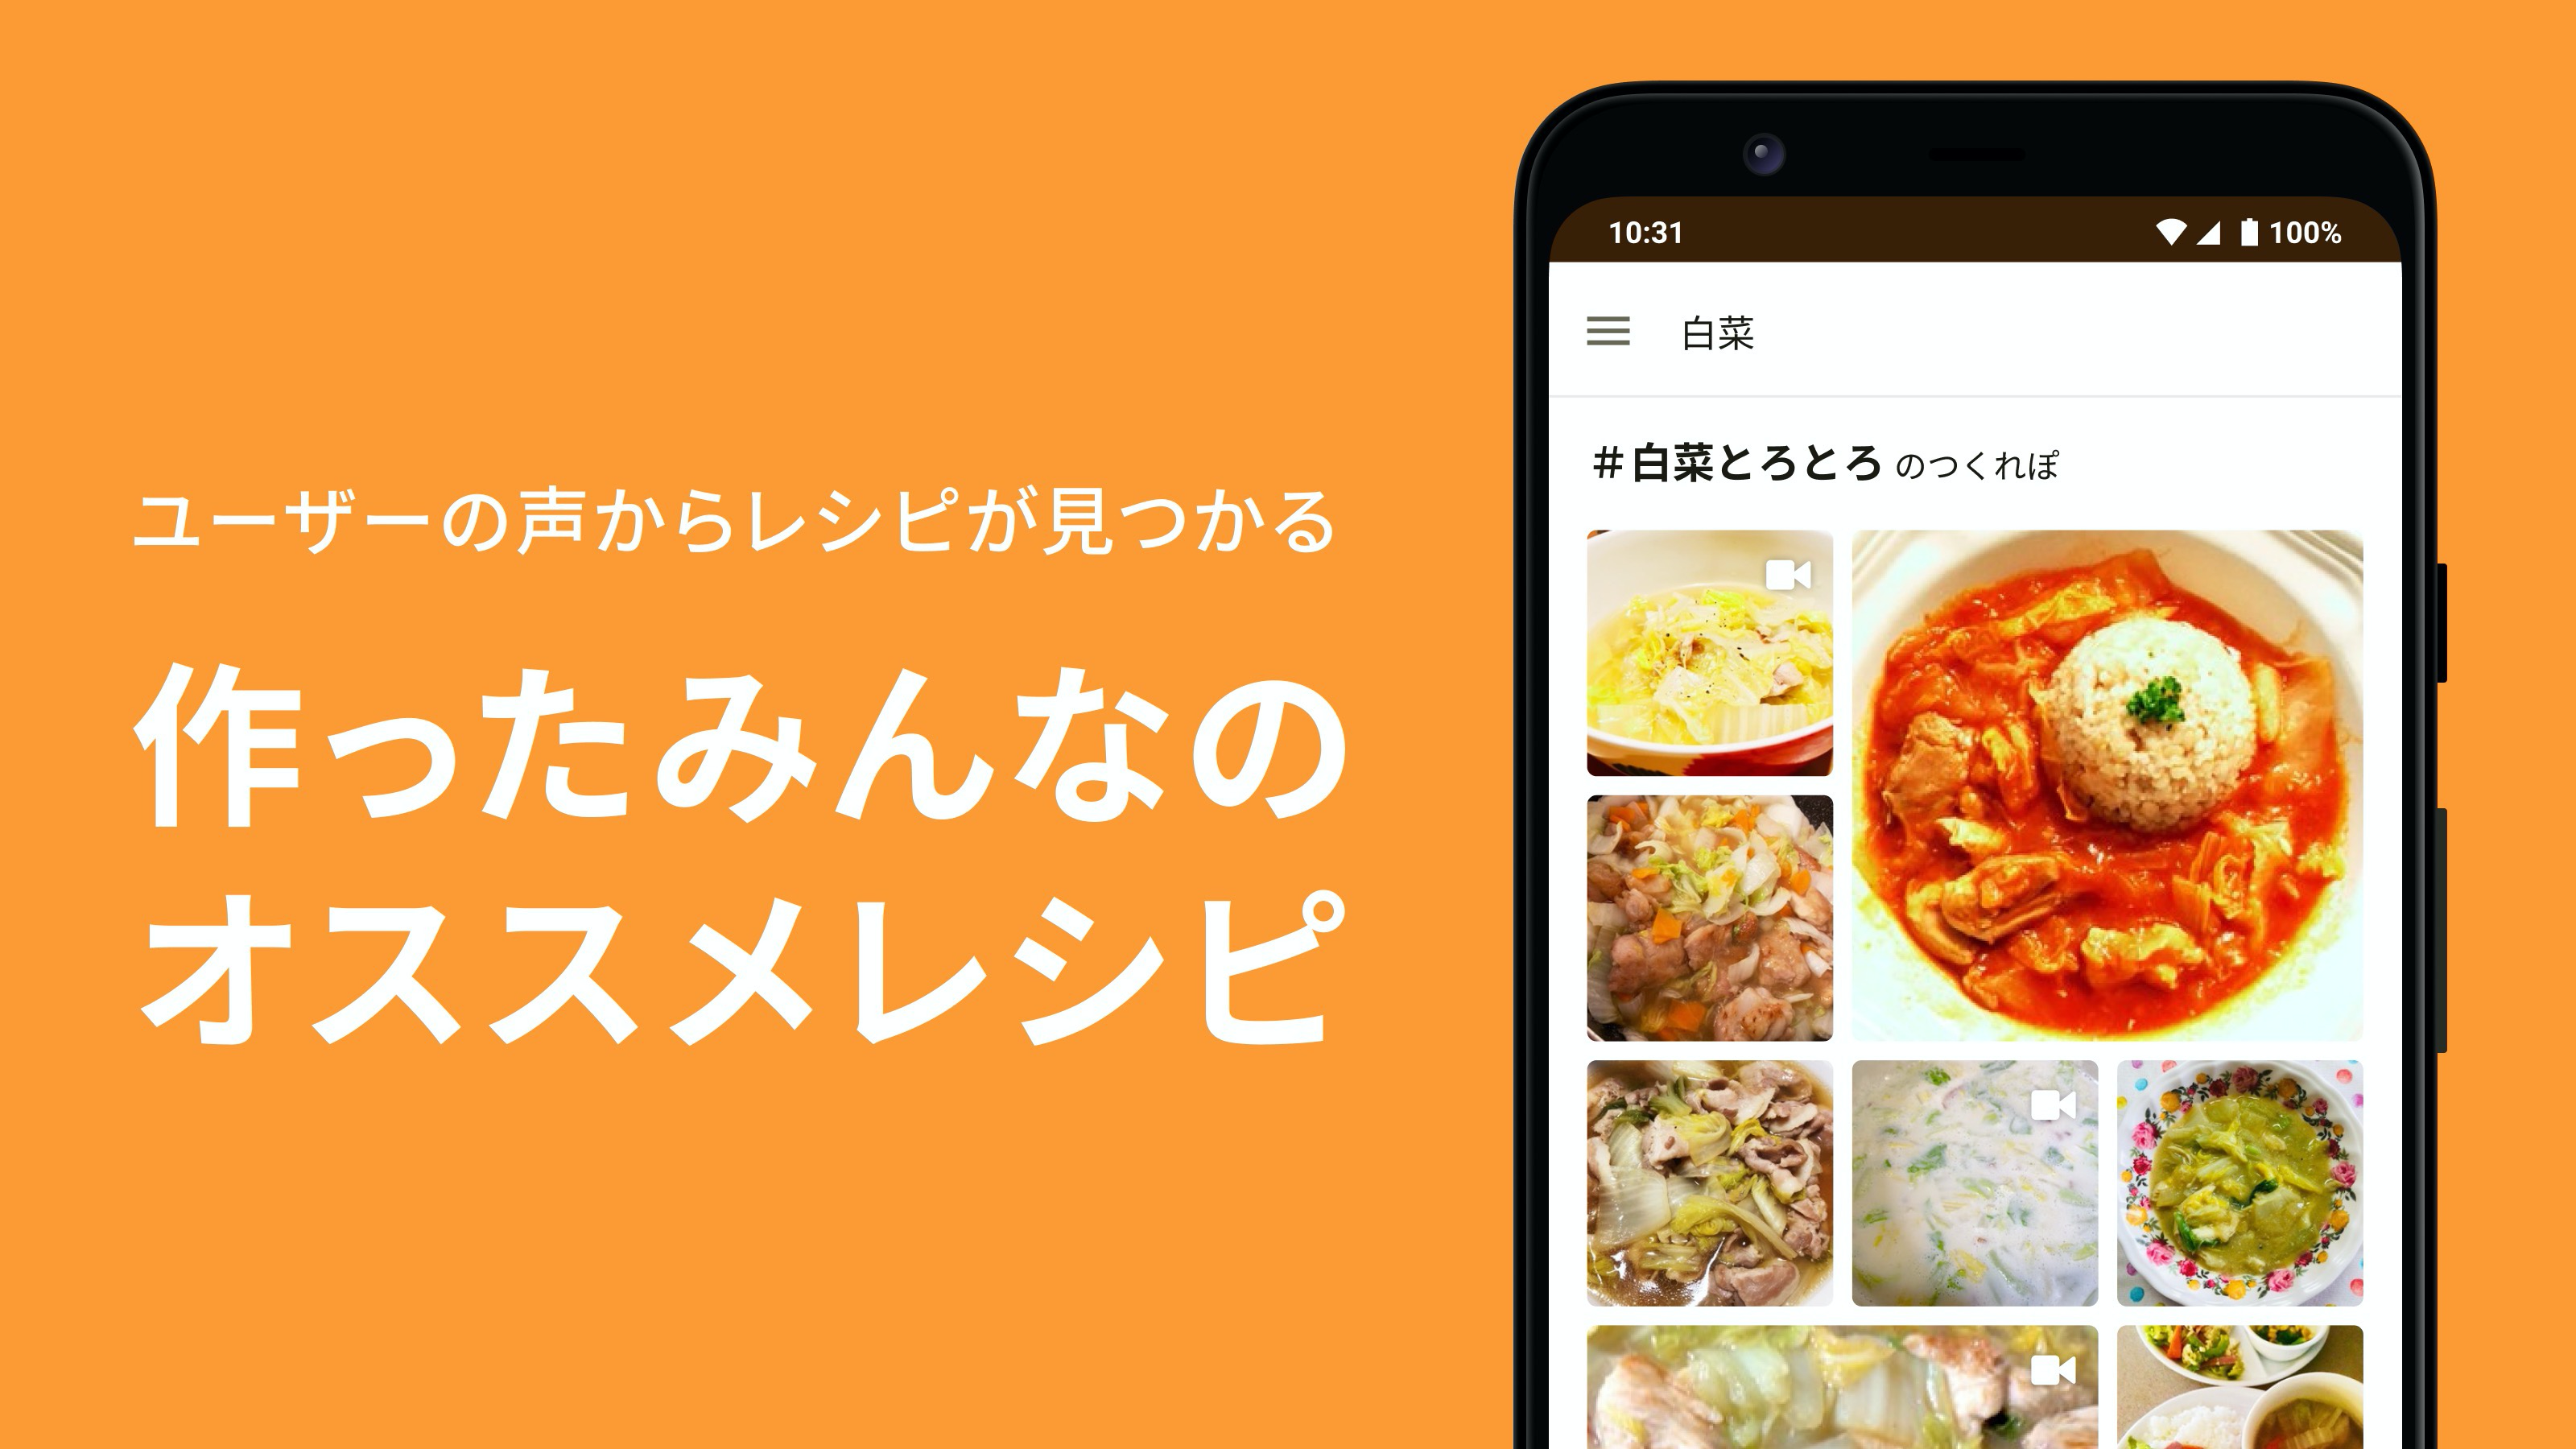 Android application クックパッド -みんなが作ってる料理レシピで、ご飯をおいしく screenshort